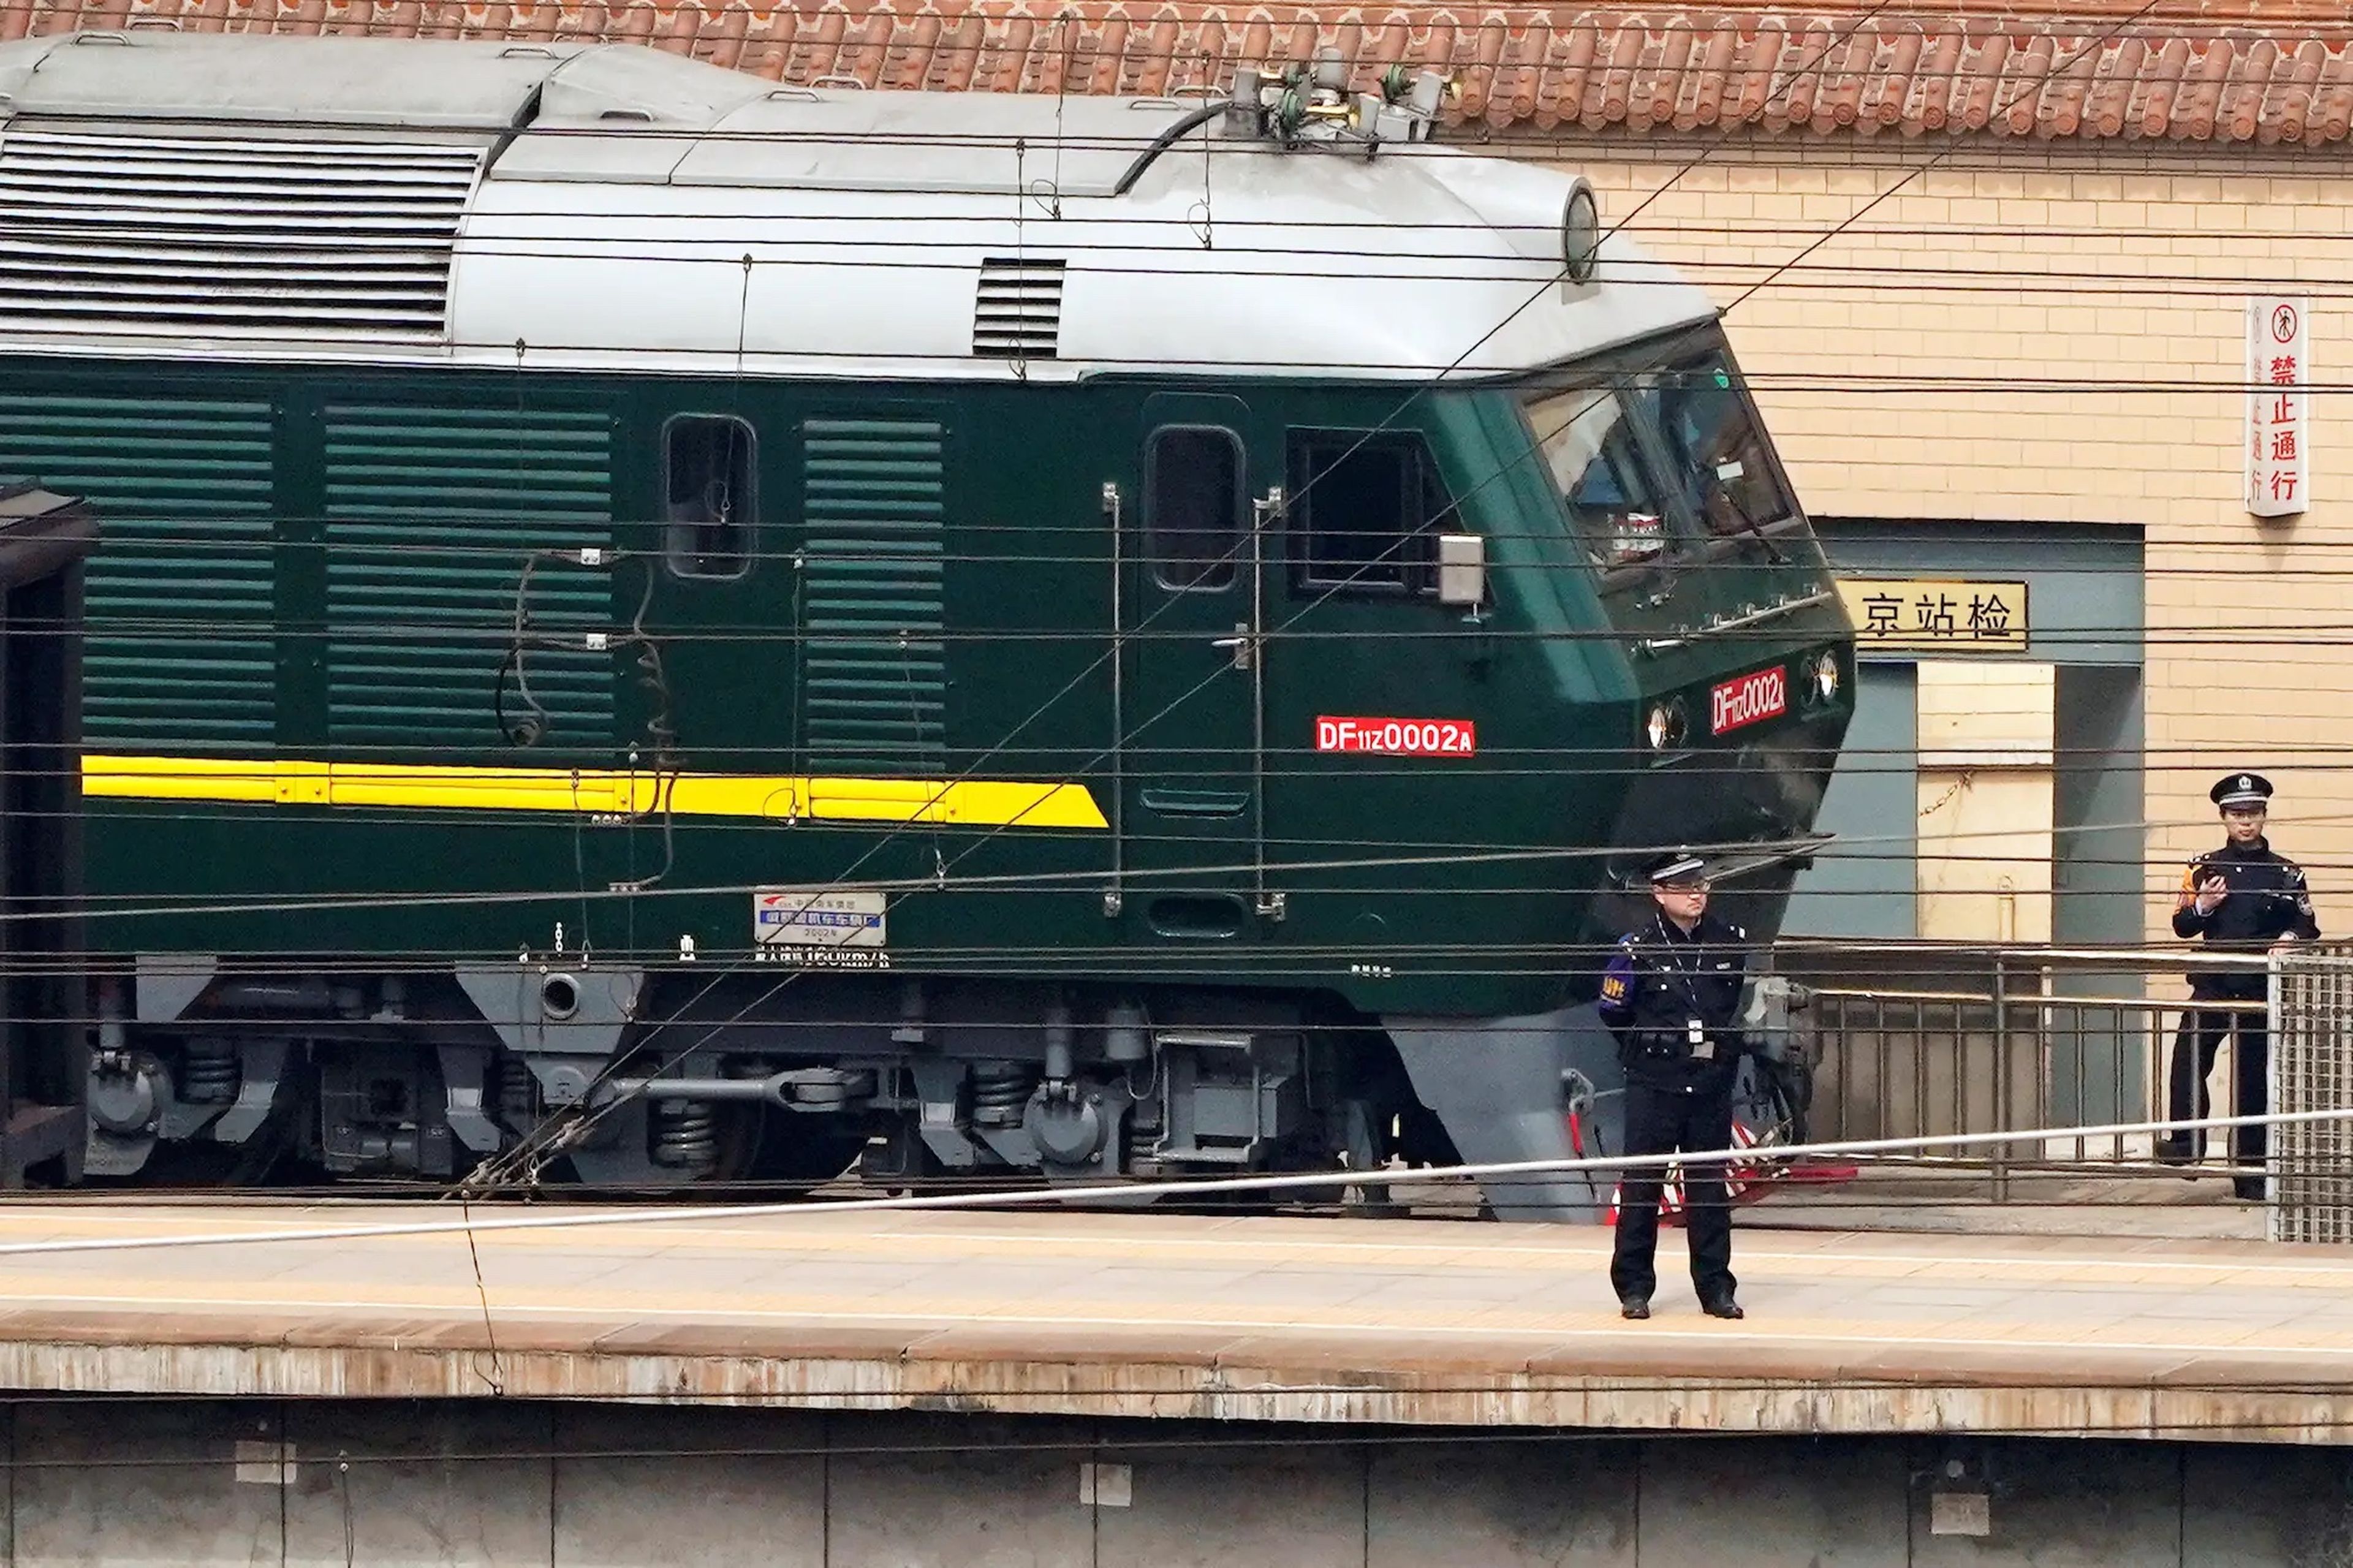 Agentes de policía vigilan junto a un tren en la estación de ferrocarril de Pekín, China.